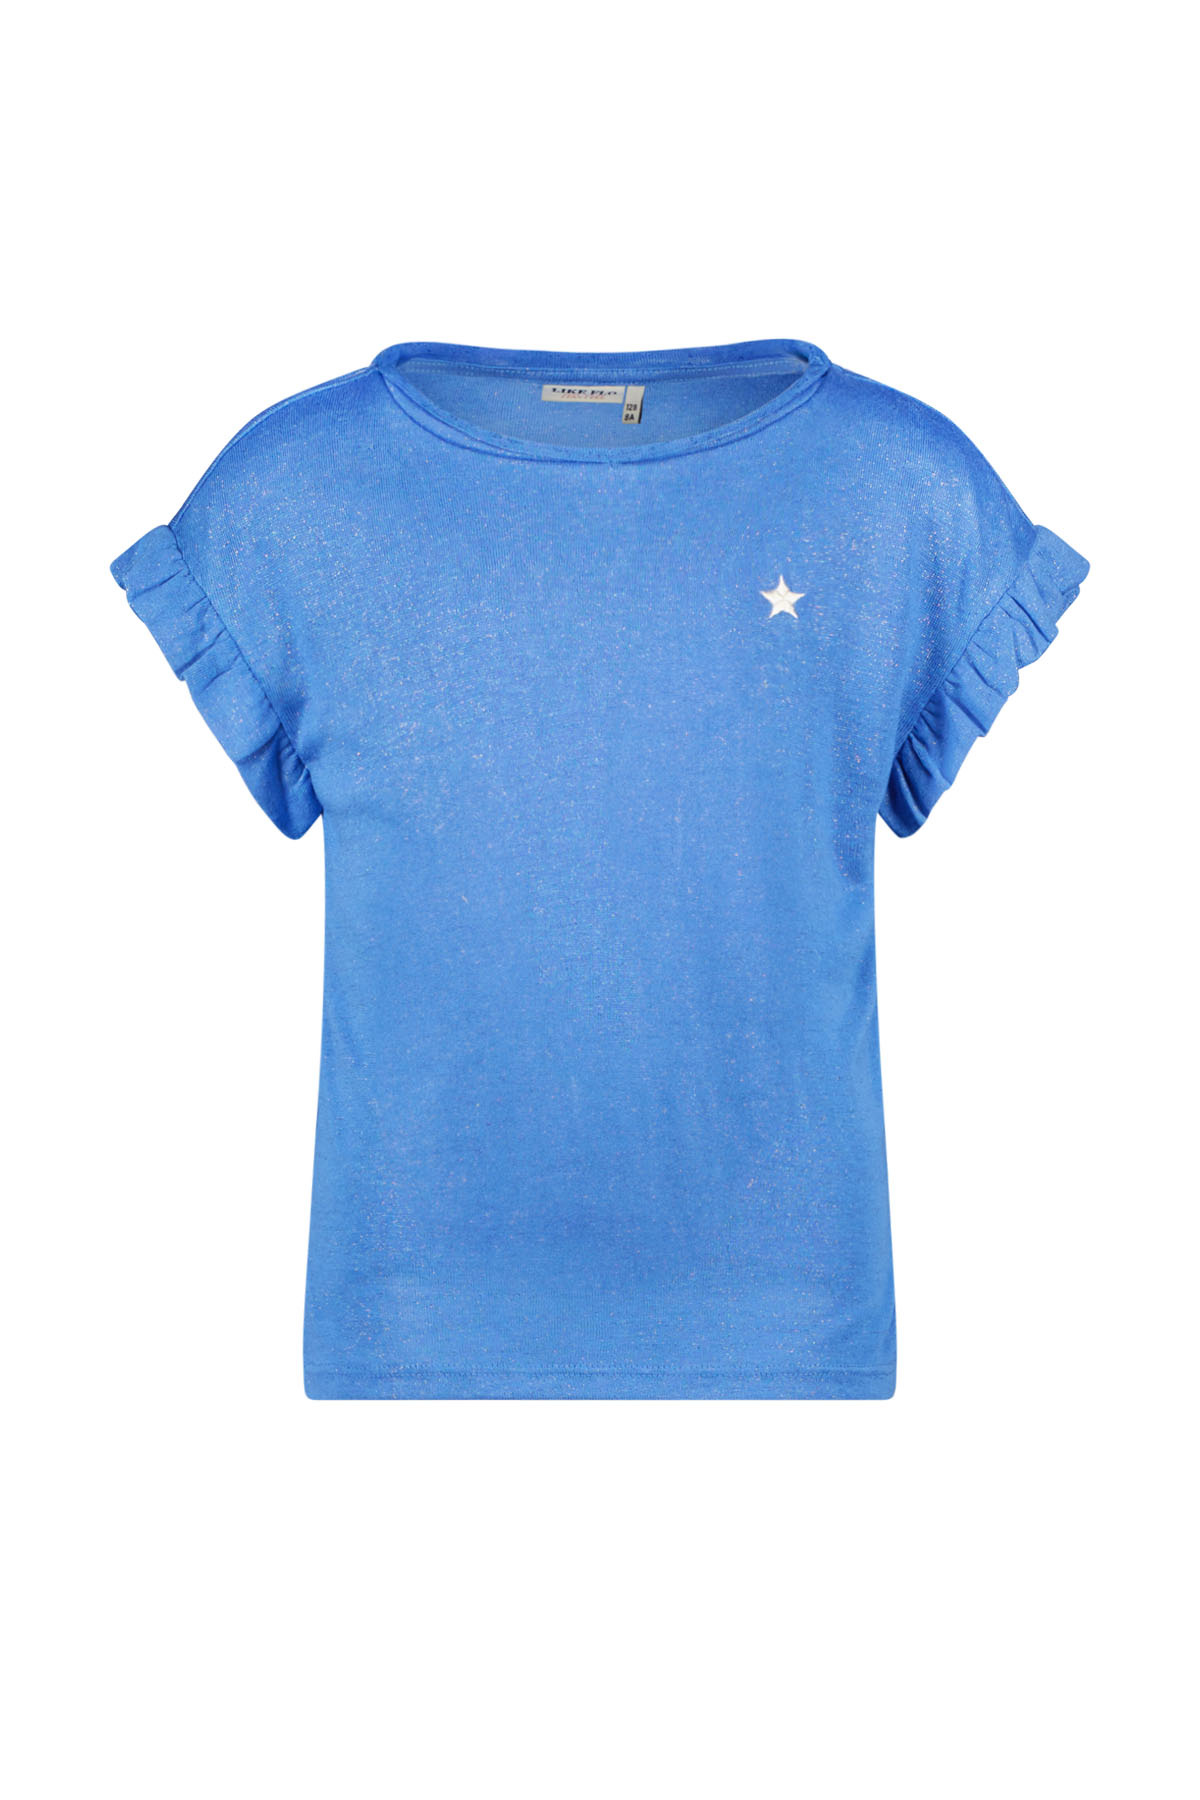 Like Flo F402-5430 Meisjes T-shirt - Blue - Maat 134